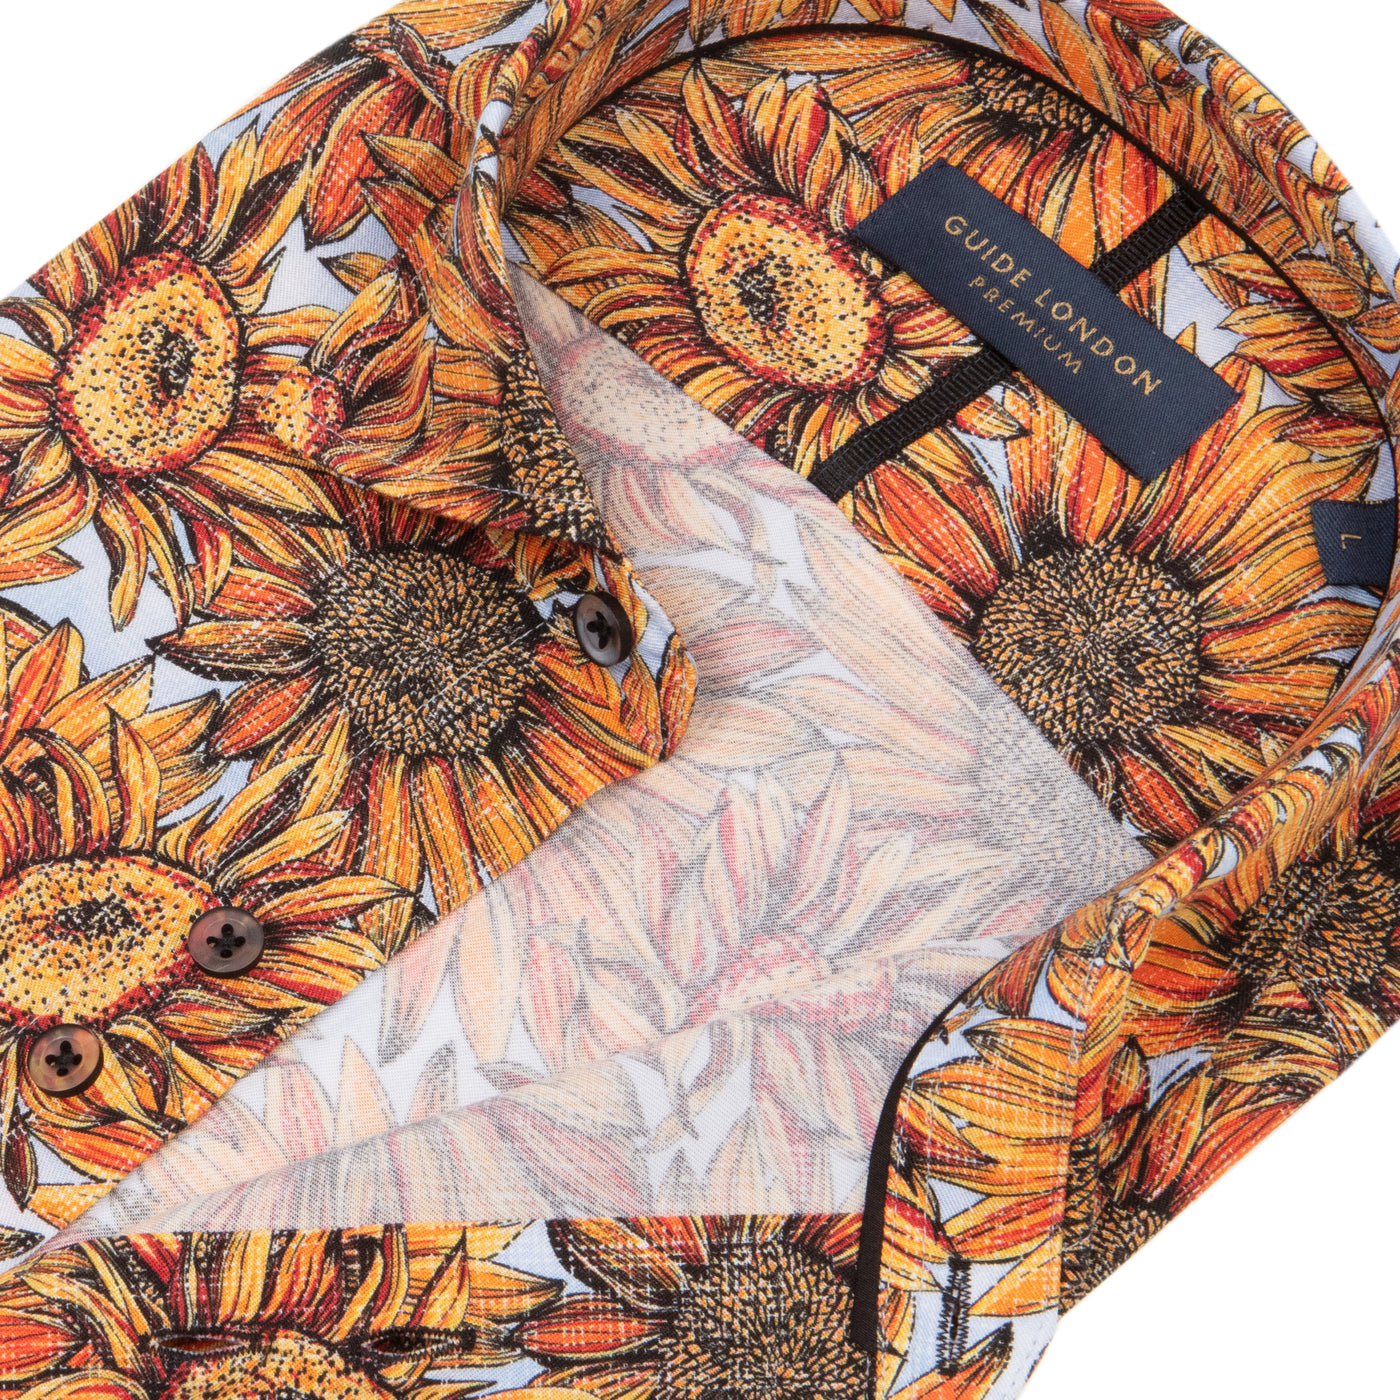 Sunflower Long Sleeve Shirt